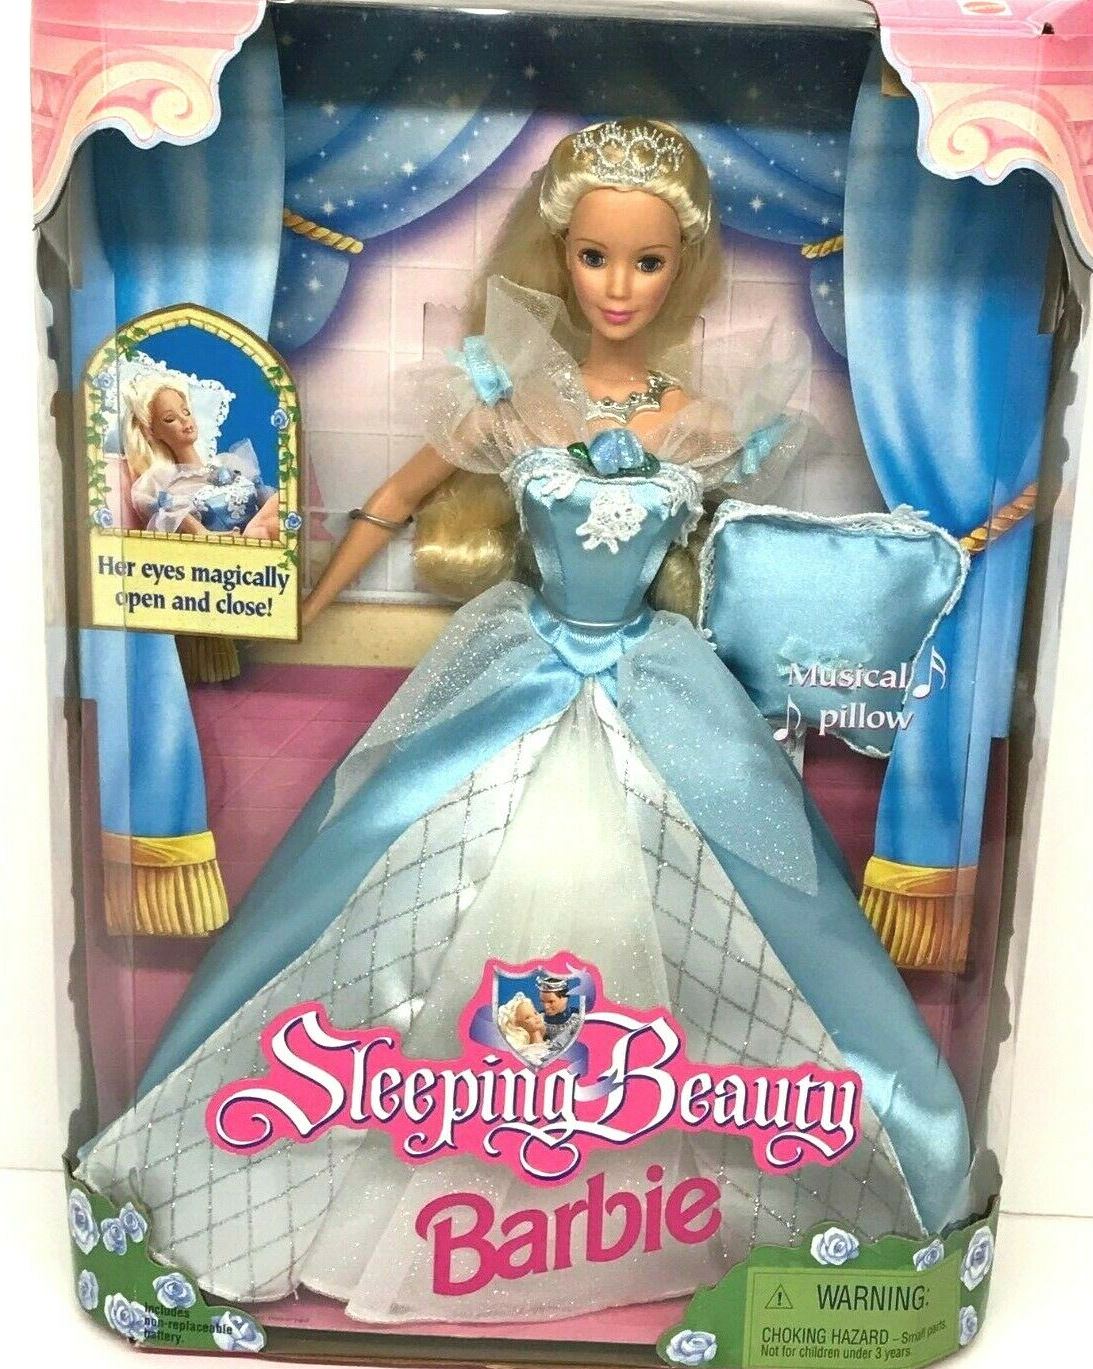 1998_sleeping_beauty_barbie.jpg